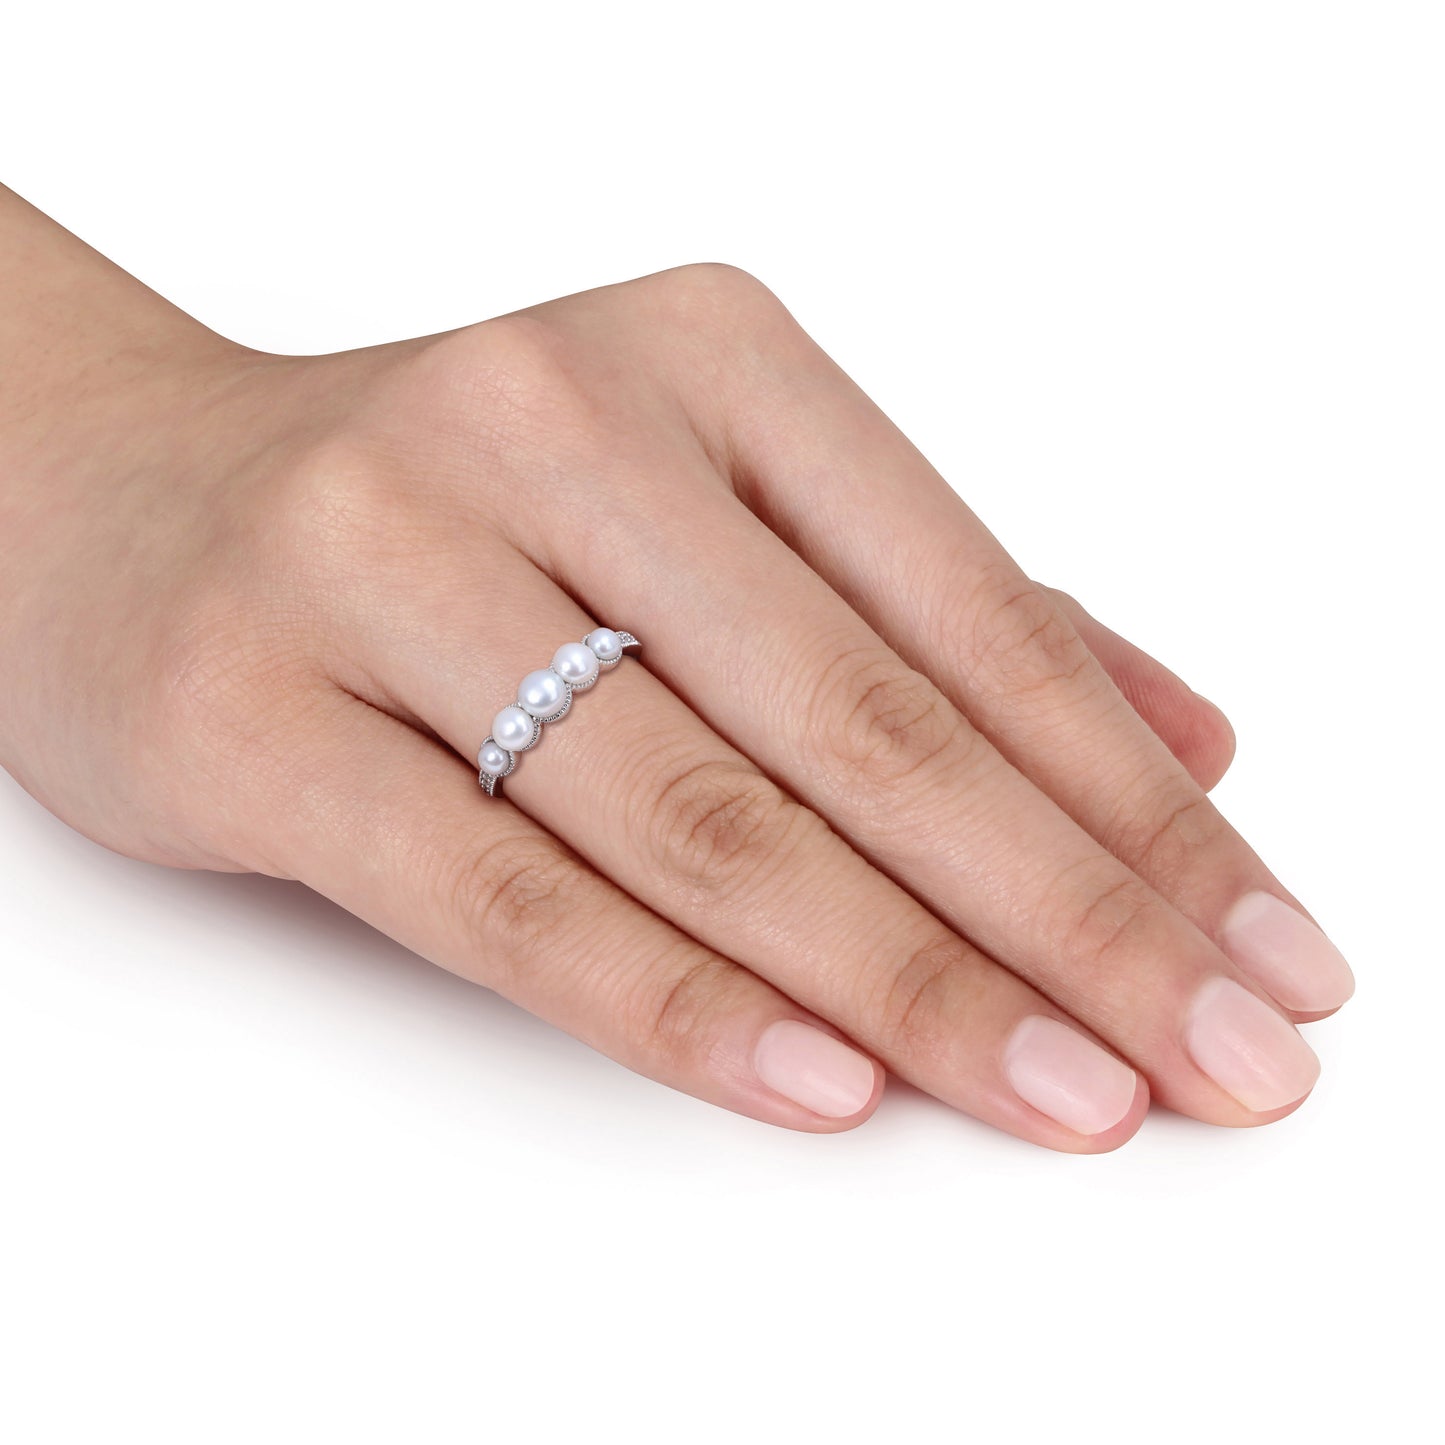 5-Pearl & Diamond Ring in 14k White Gold